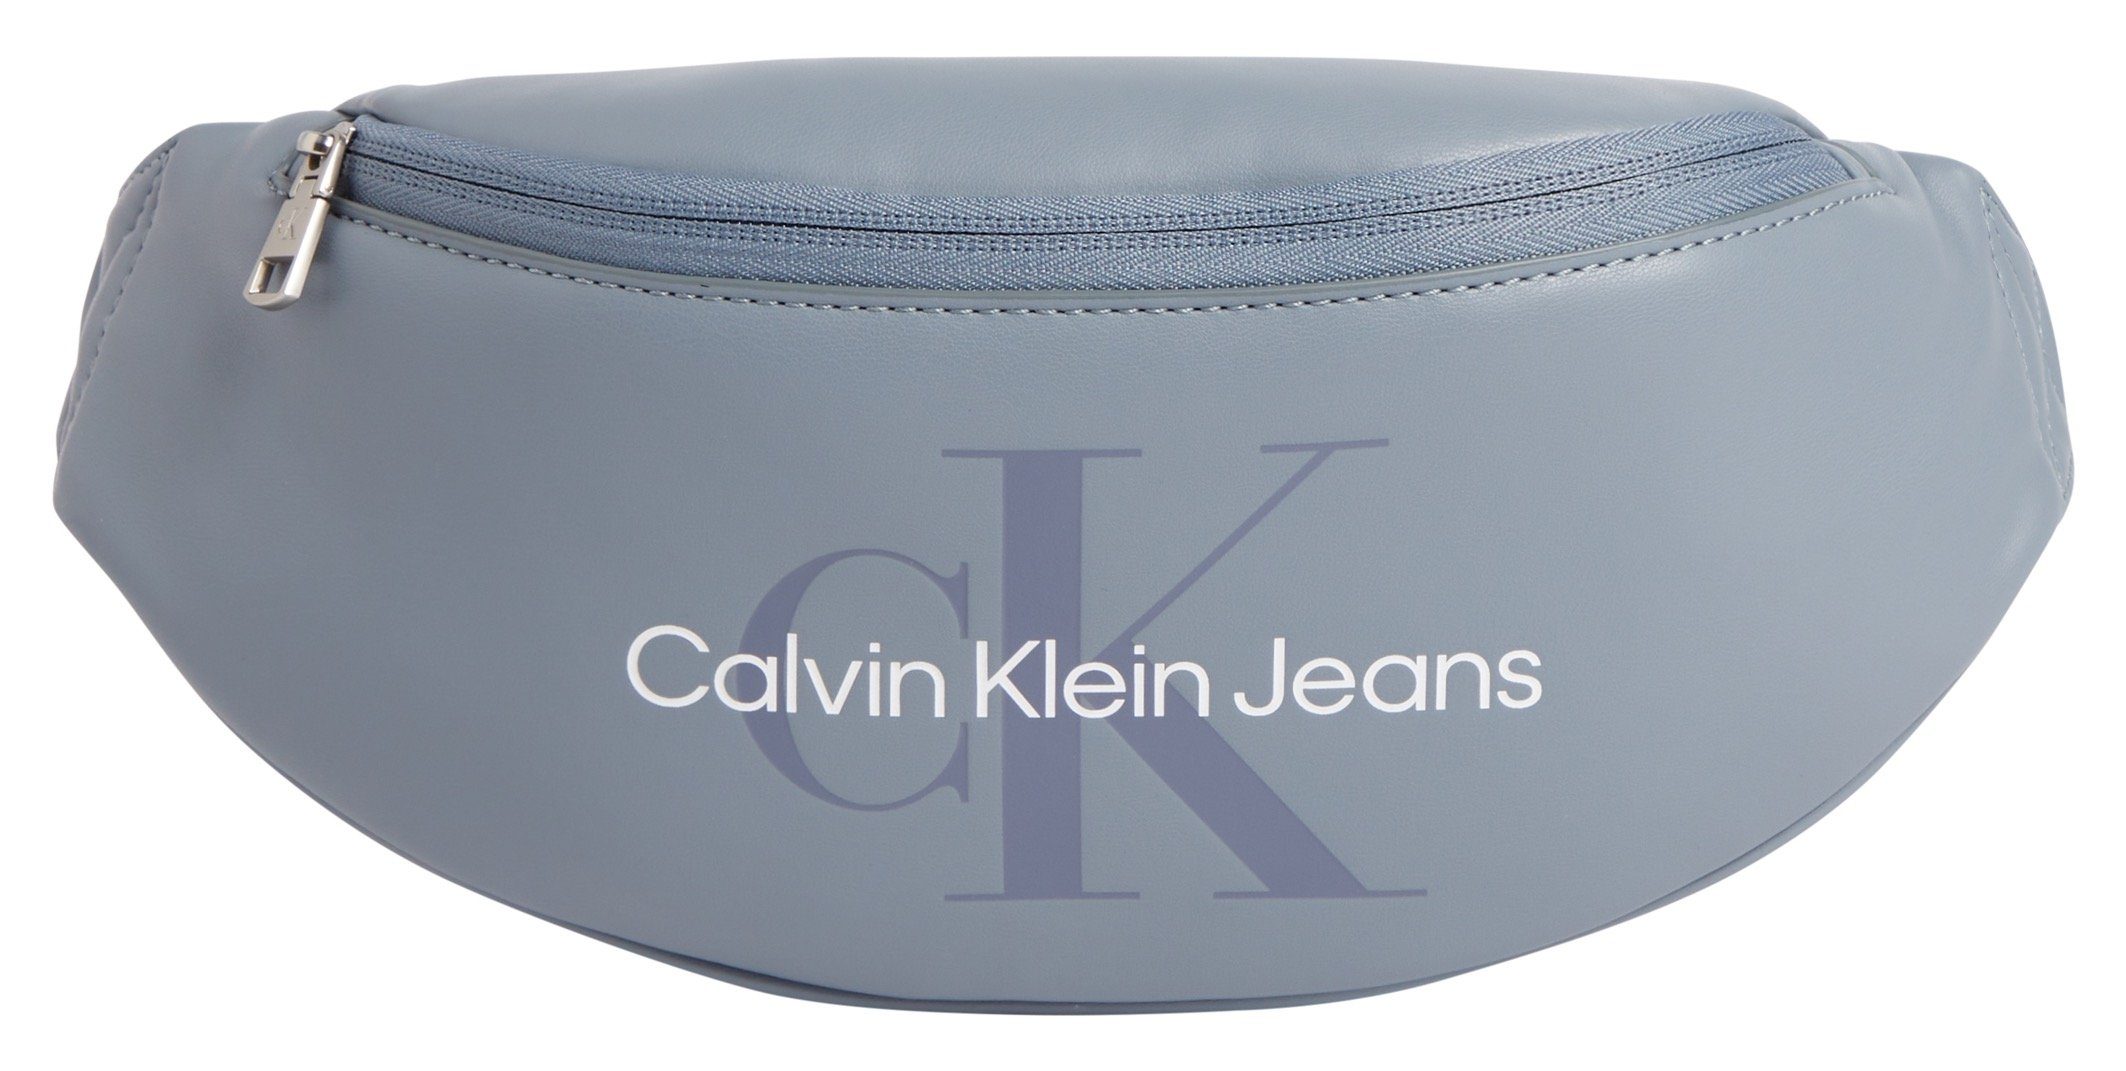 Calvin Klein Jeans Bauchtasche WAISTBAG38, Prägung Logo SOFT MONOGRAM schöner mit